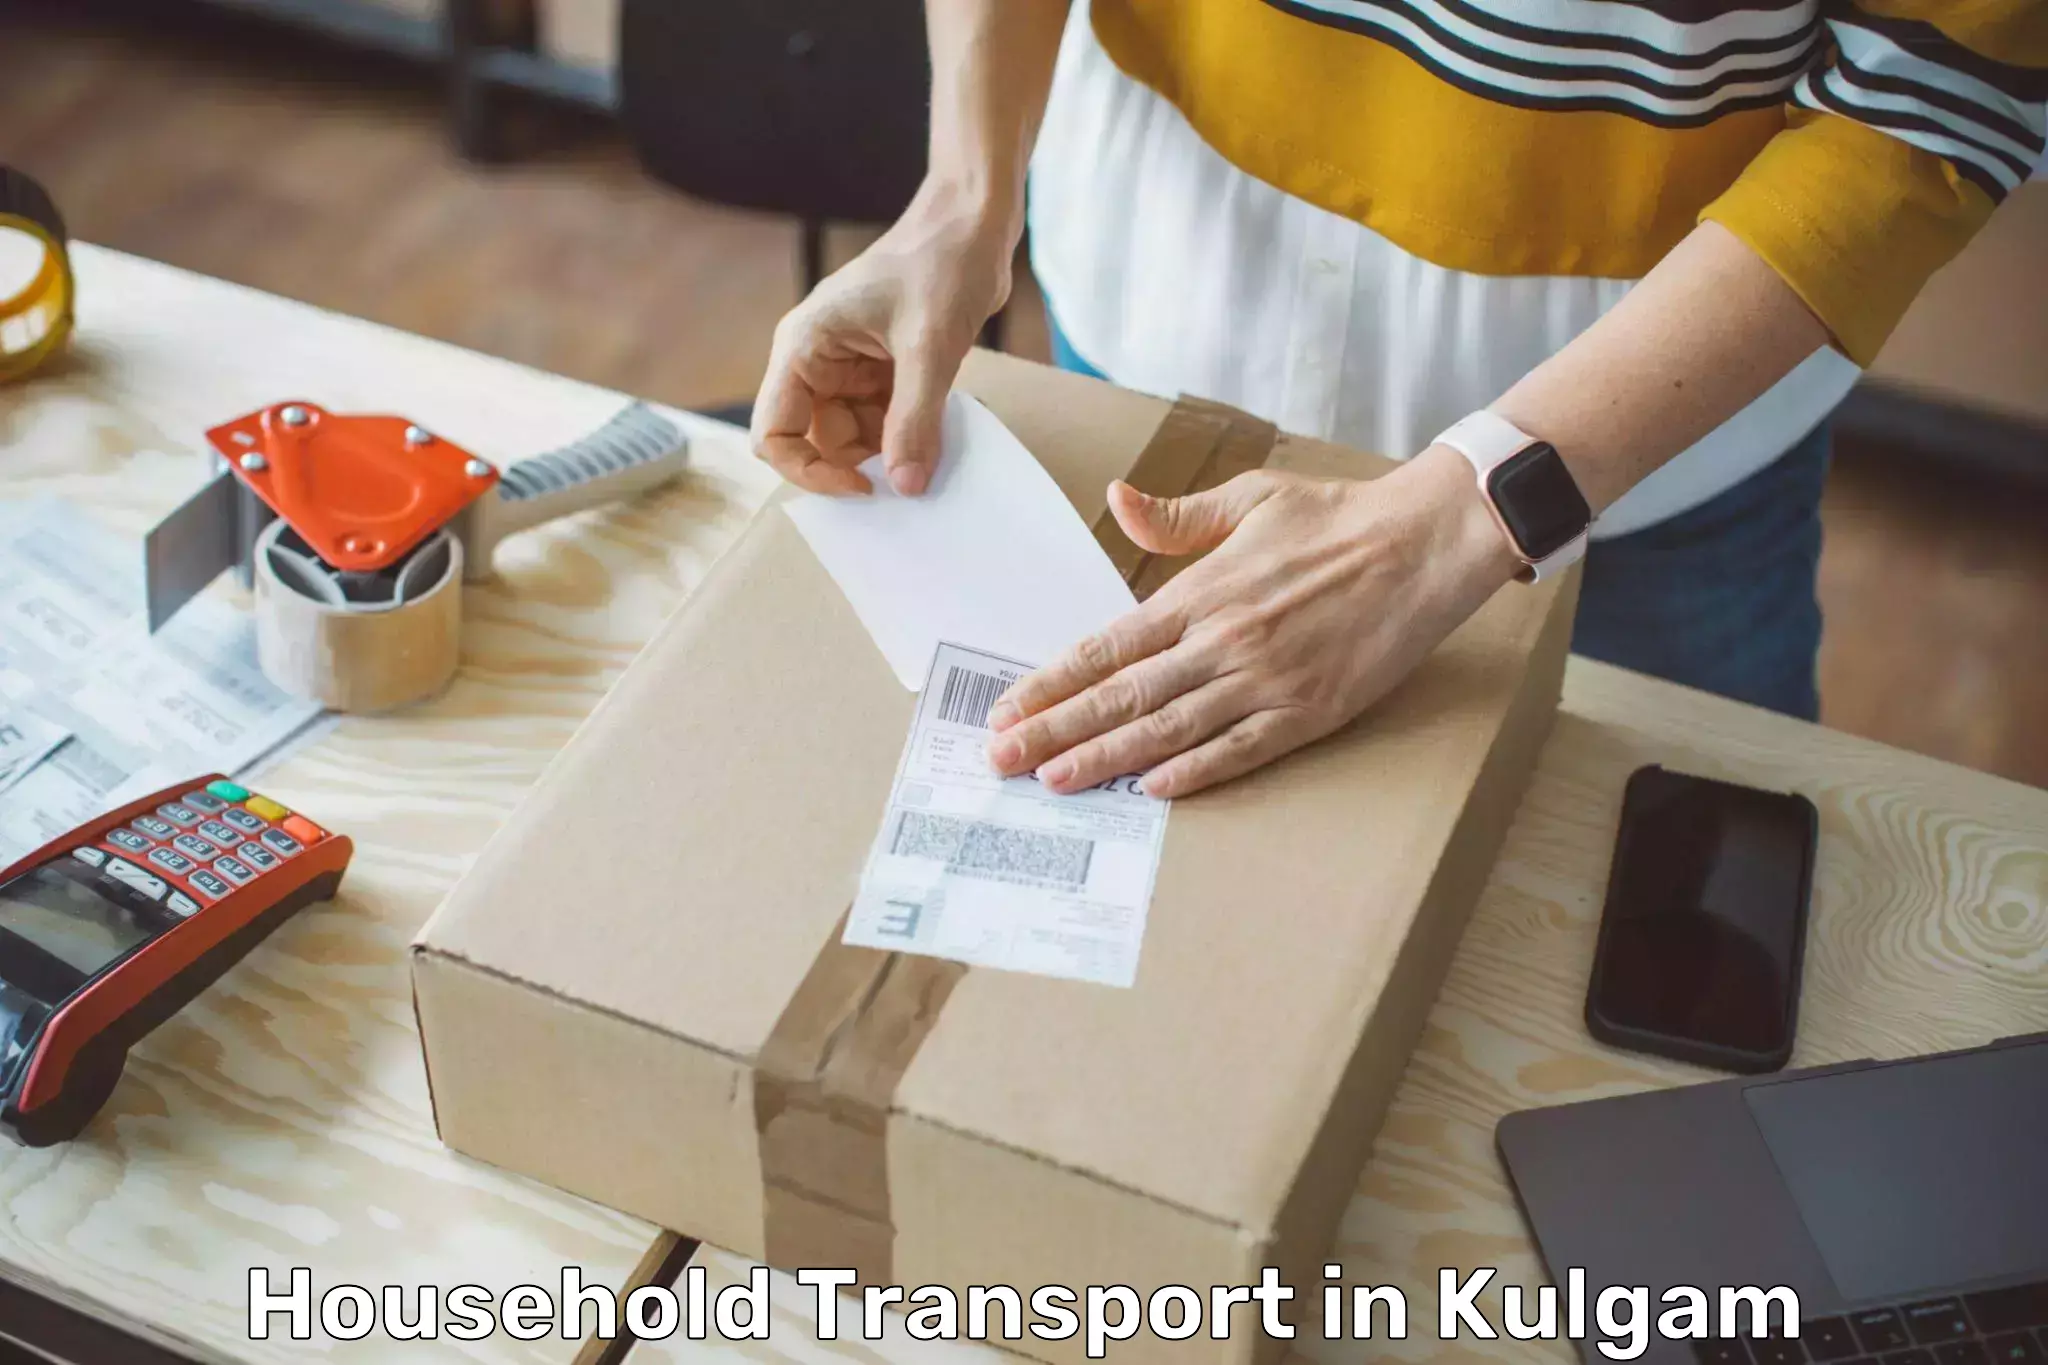 Quality household transport in Kulgam